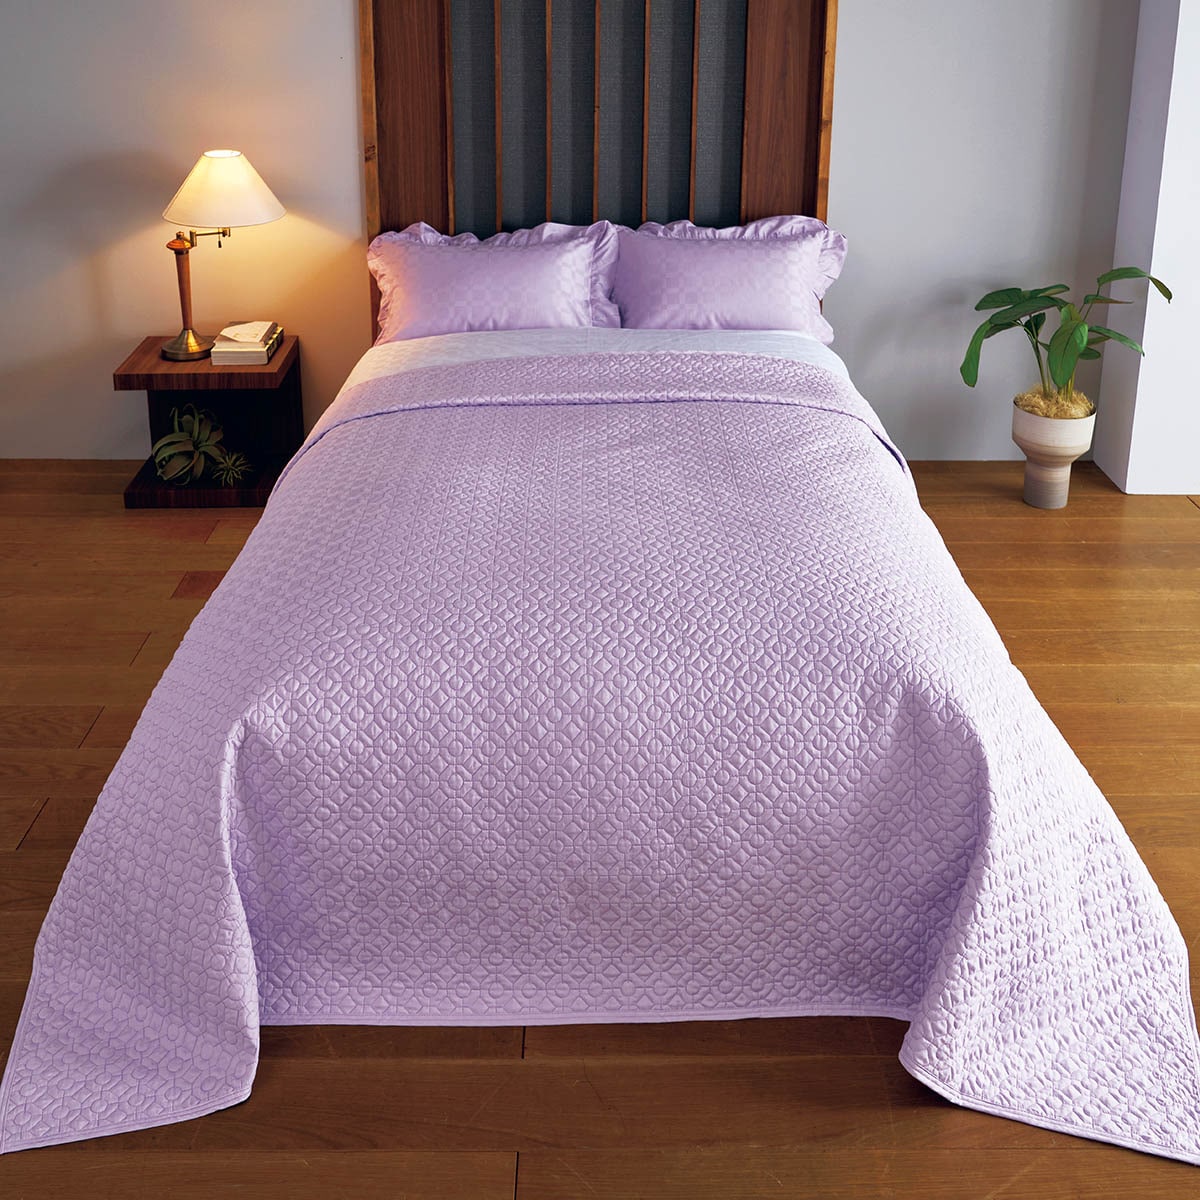 ベッドスプレッド(肌側綿100%・ホテル感覚の高密度タイプ) - 寝具の